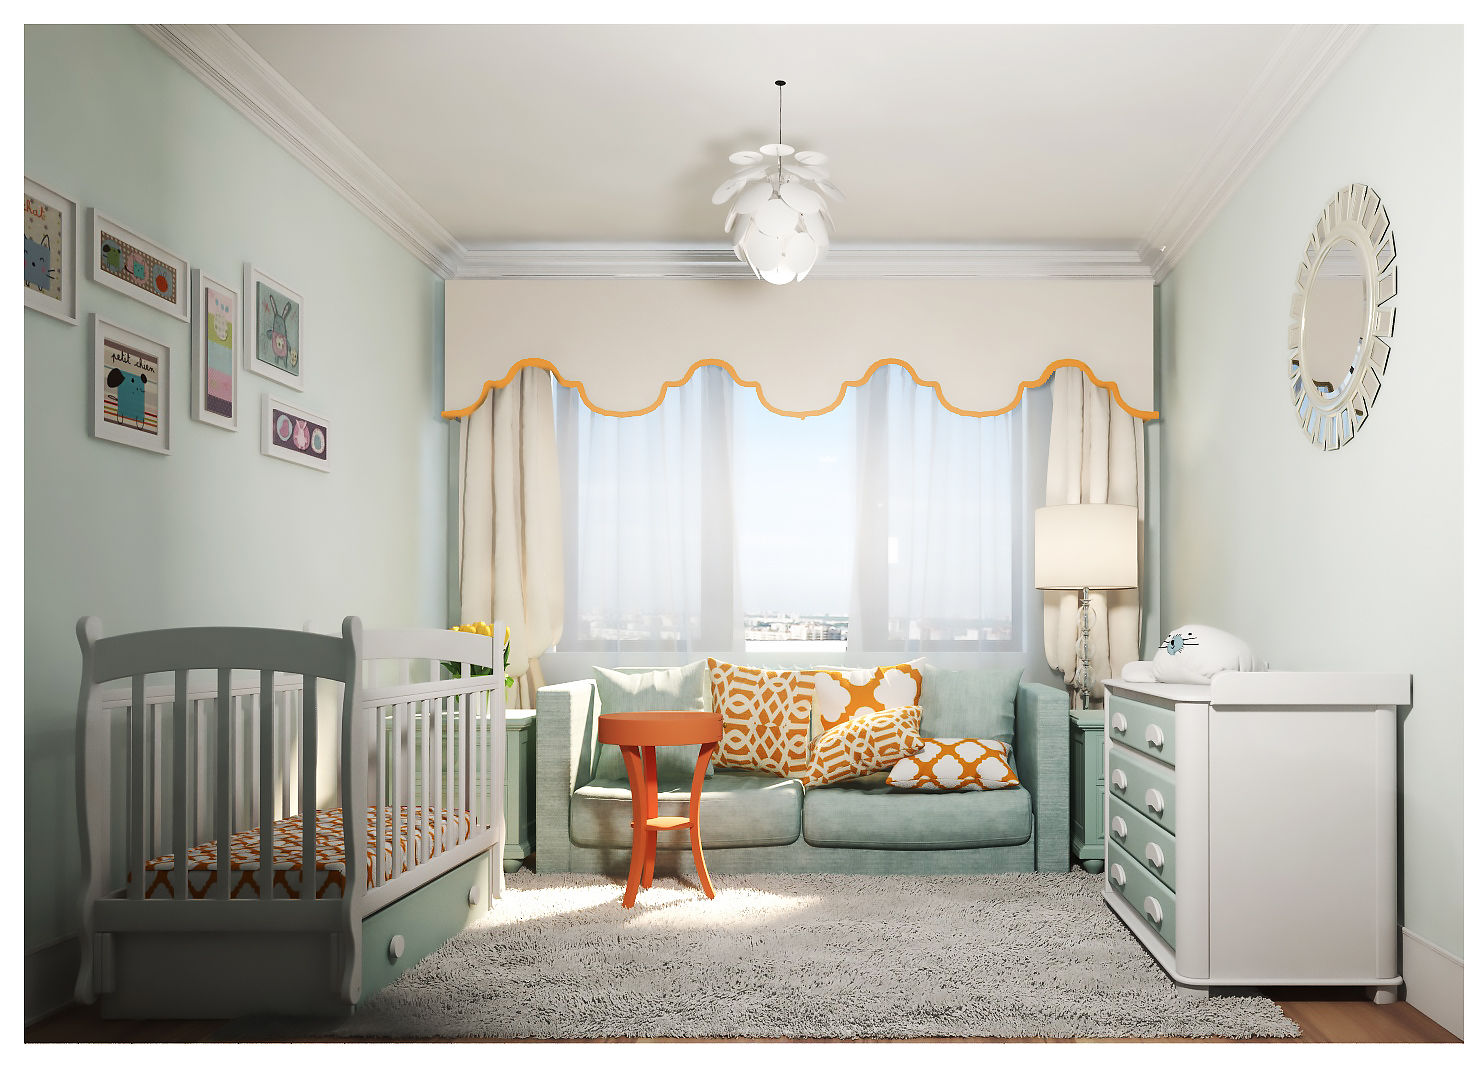 3-bedroom Apartment, Moscow , Alexander Krivov Alexander Krivov Nursery/kid’s room